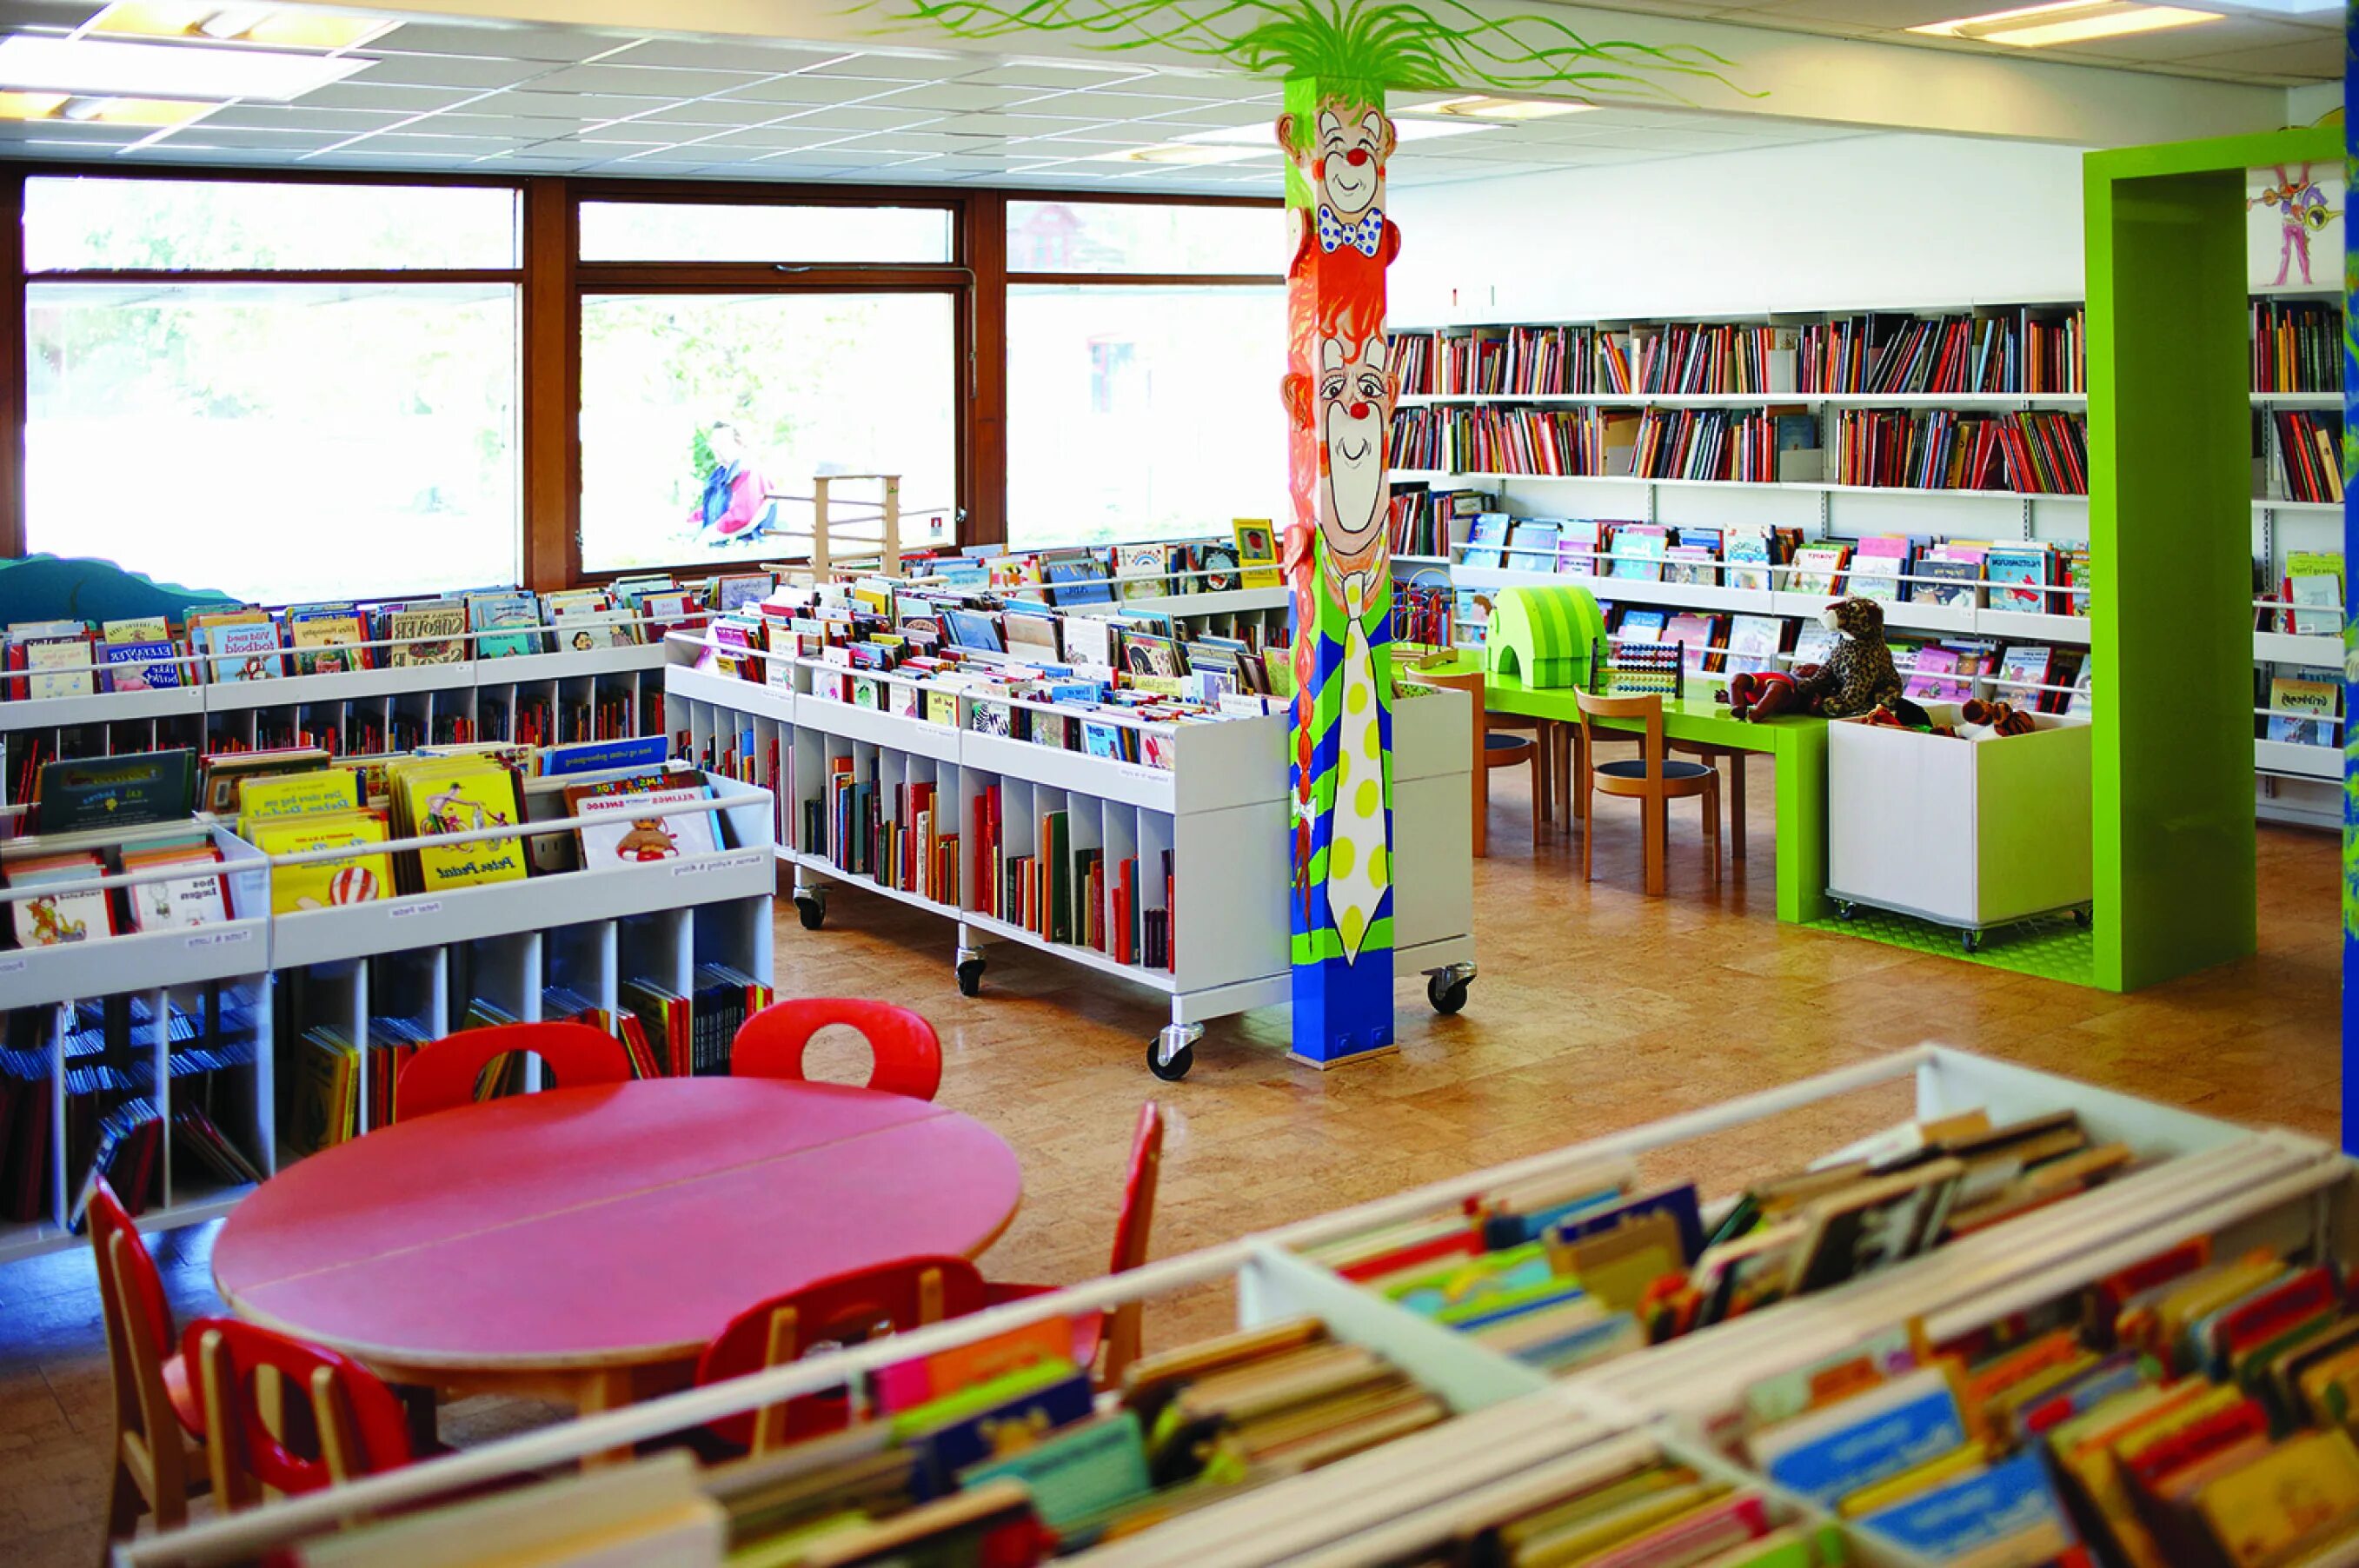 School library. Современная библиотека в школе. Мебель для читального зала детской библиотеки. Читальный зал в школе. Библиотечное пространство в школе.